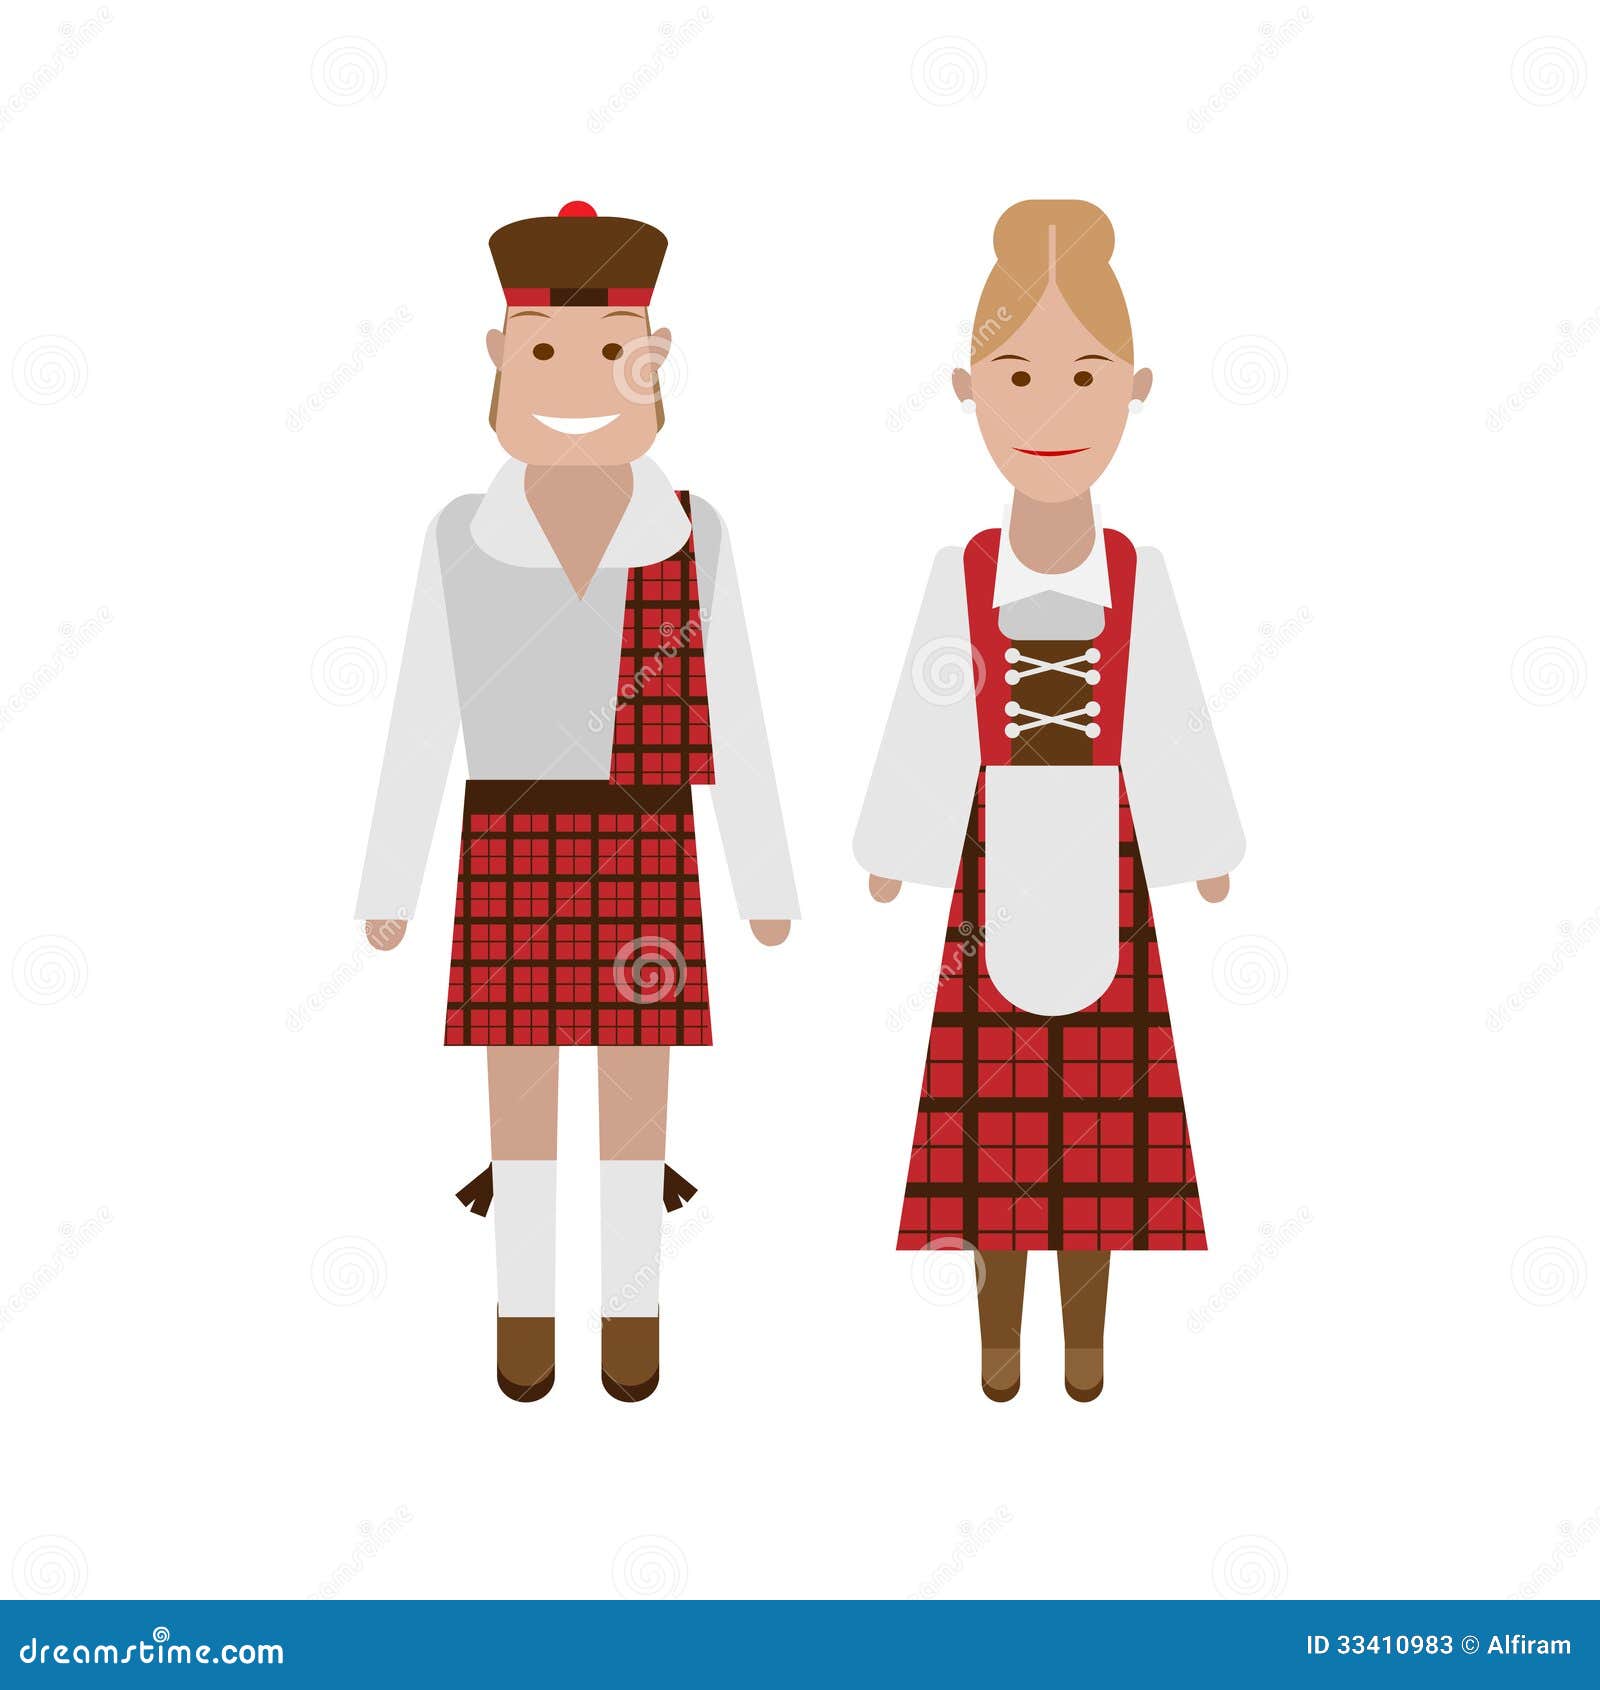 Scottish National Costume Stock Photos - Image: 33410983